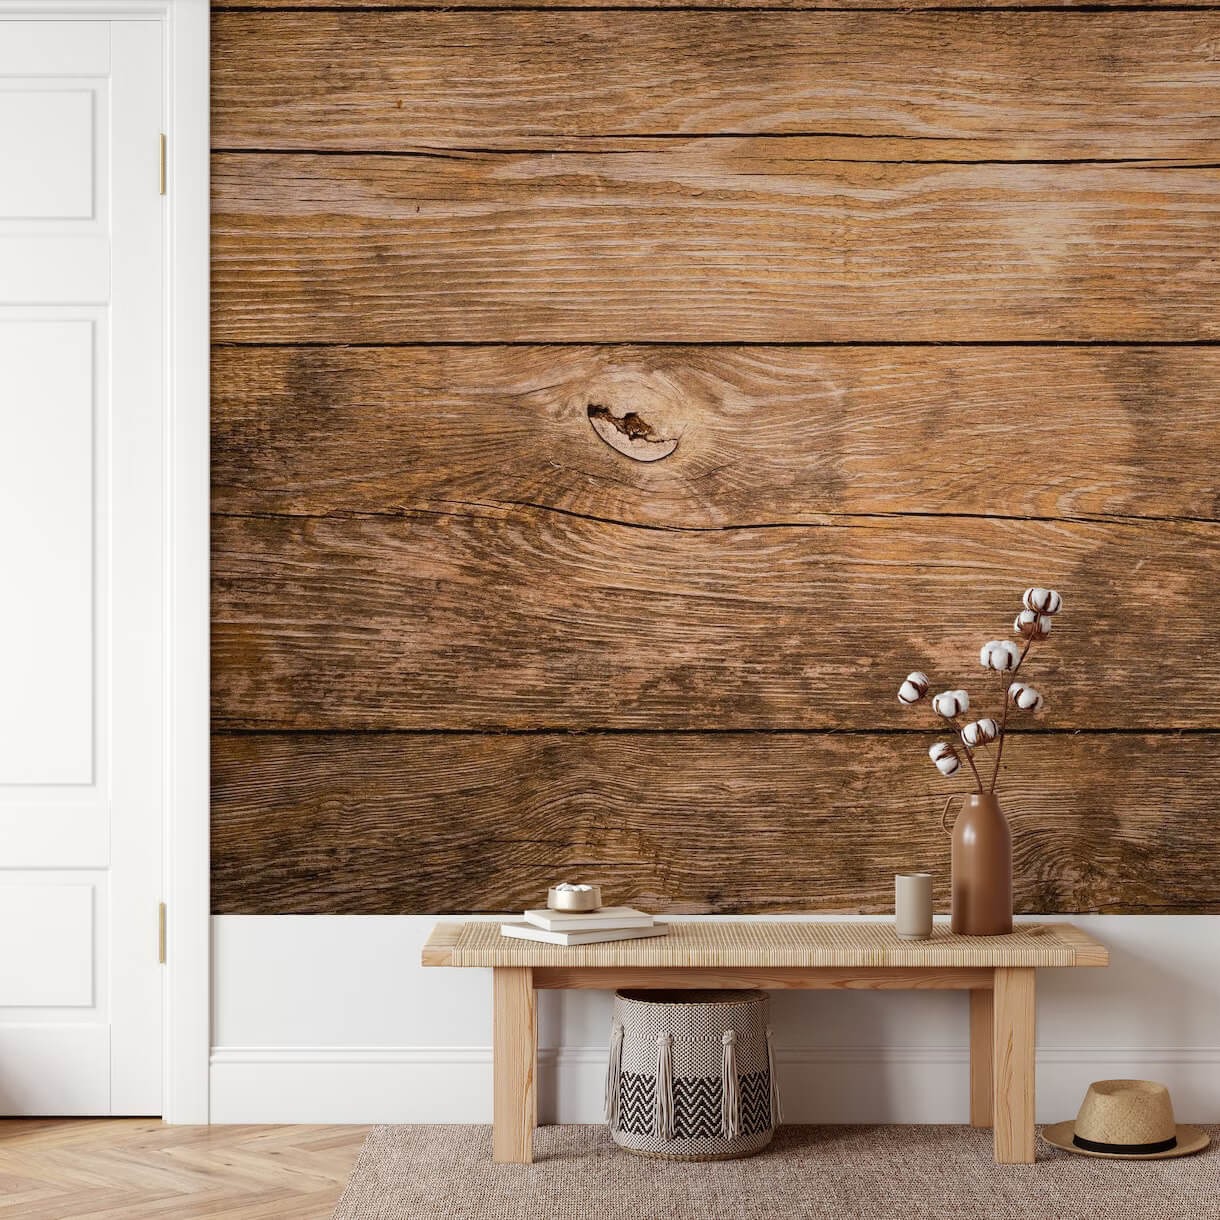 Giấy dán tường giả gỗ đẹp mắt và dễ dùng cho mọi không gian